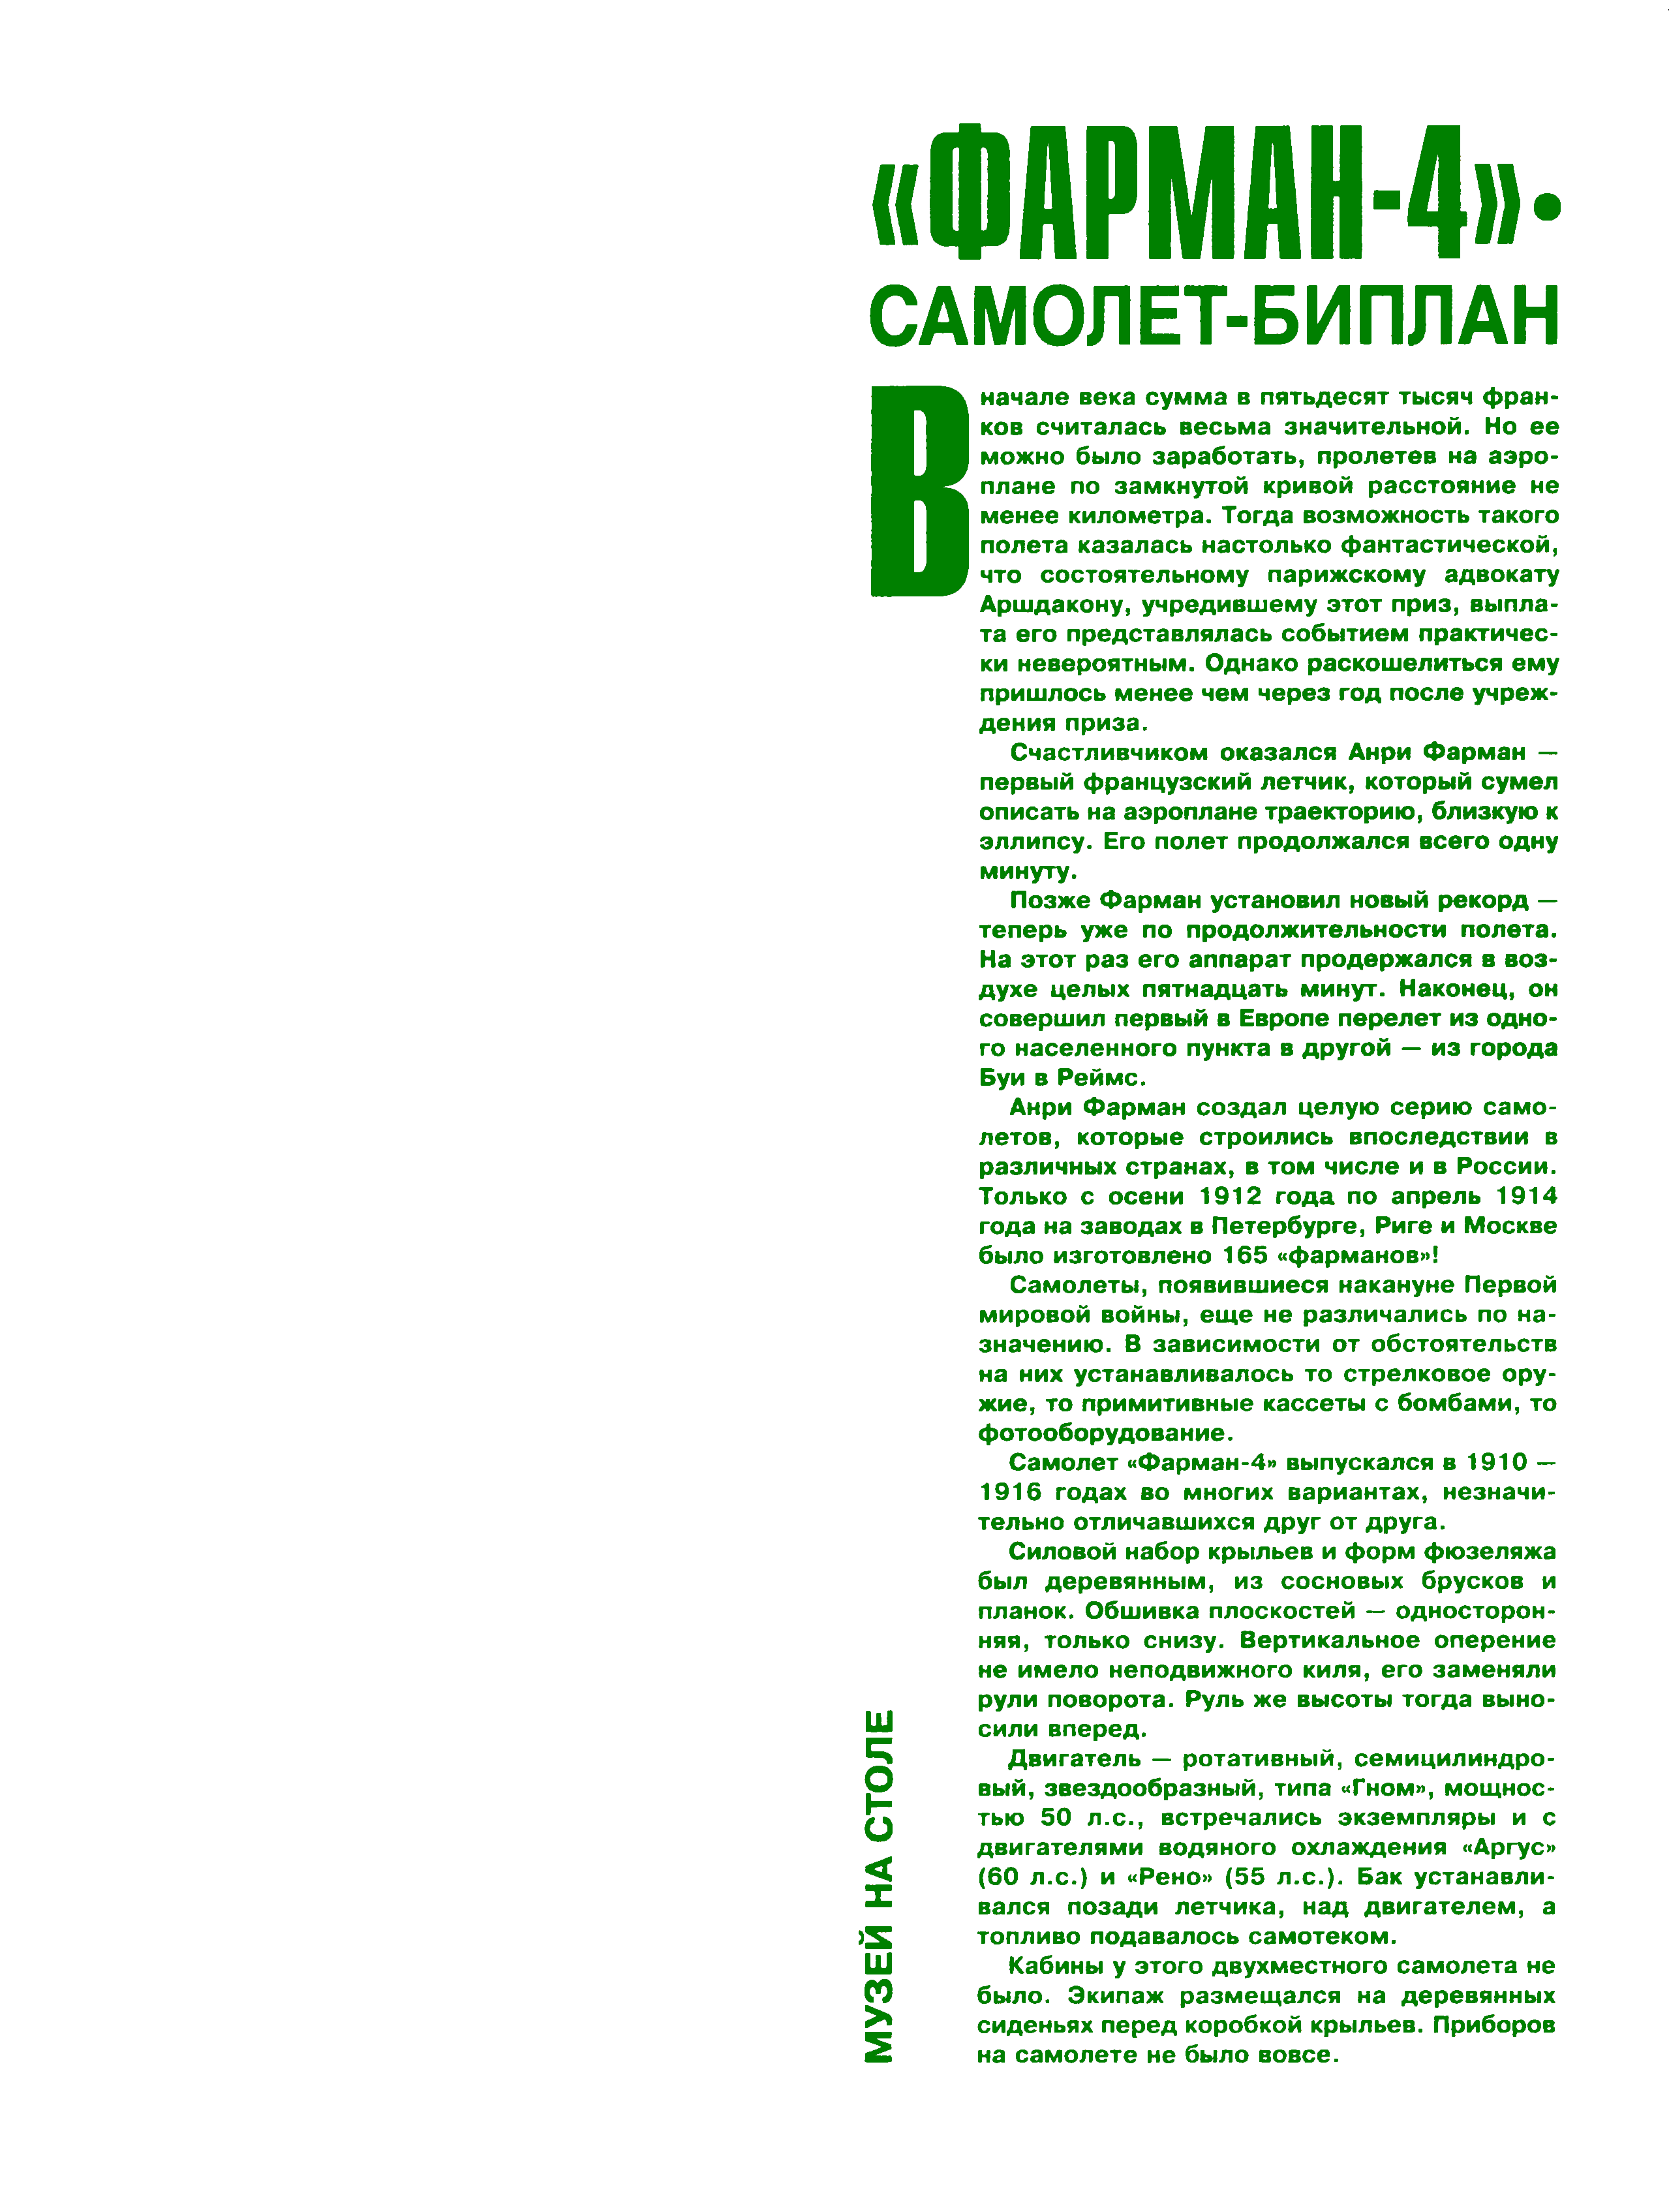 "Левша" 1, 2000, 1 c.